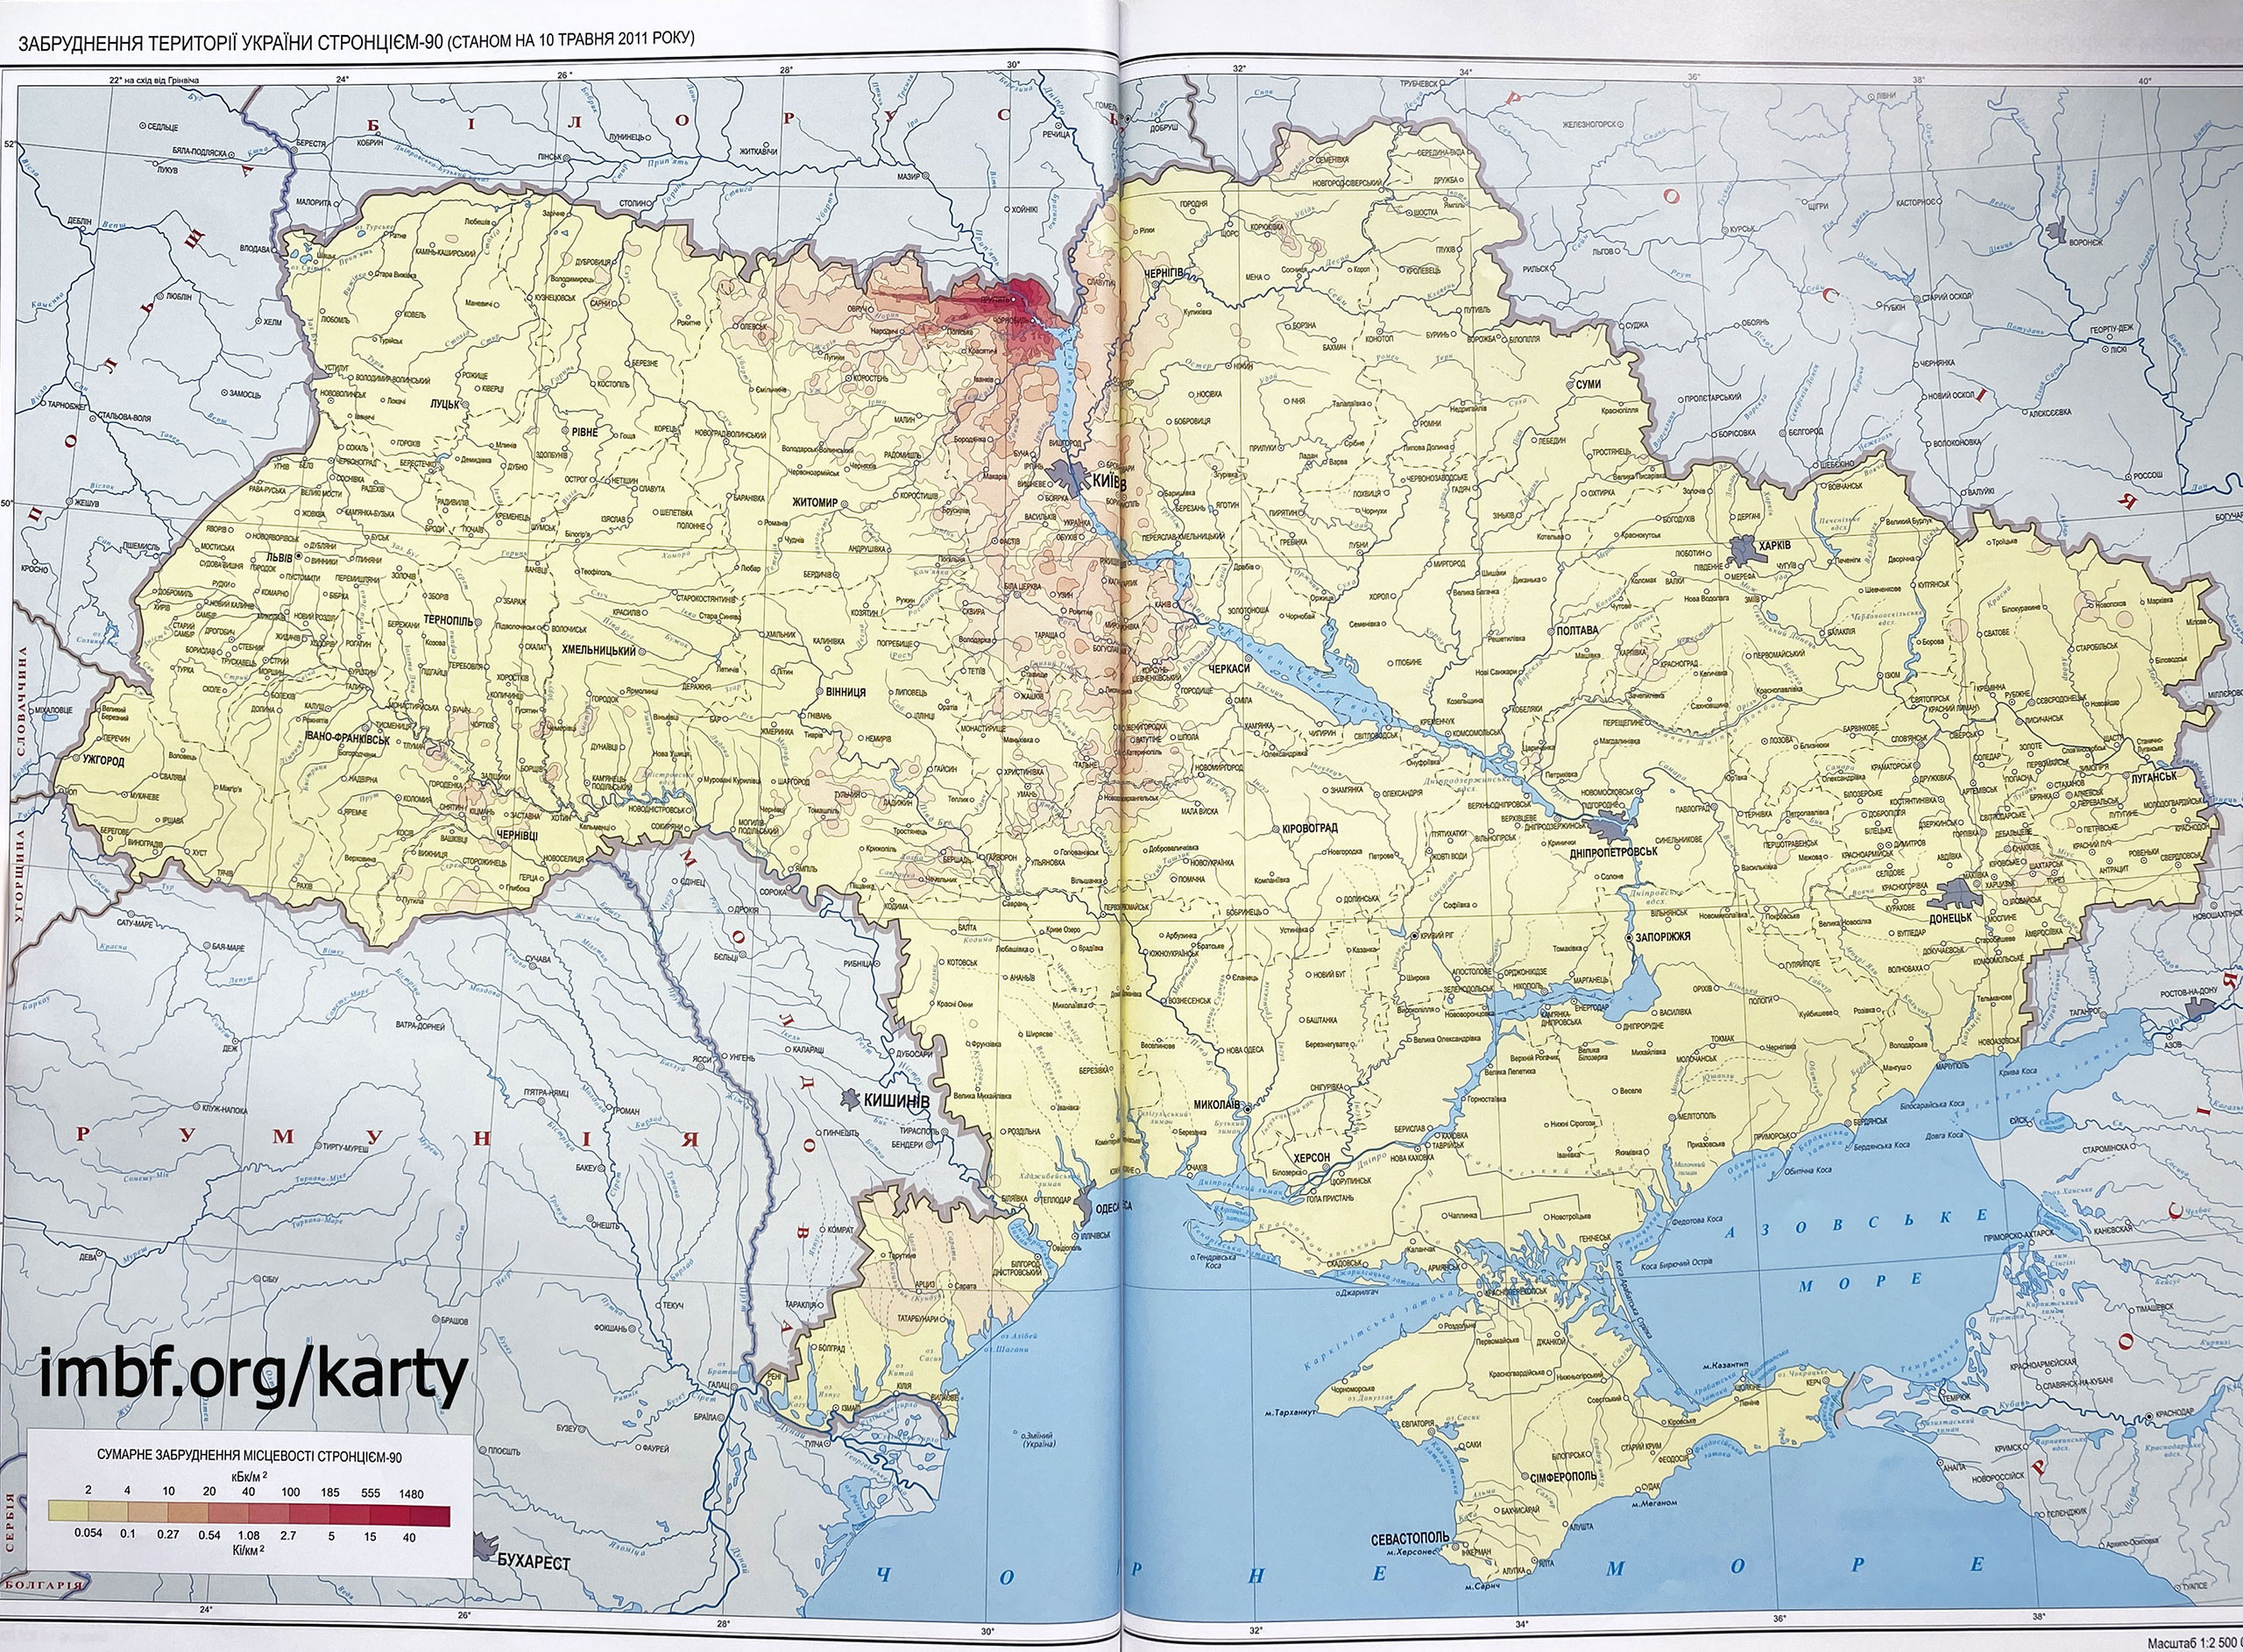 Загрязнение территории Украины стронцием-90 (по состоянию на 10 мая 2011 года)